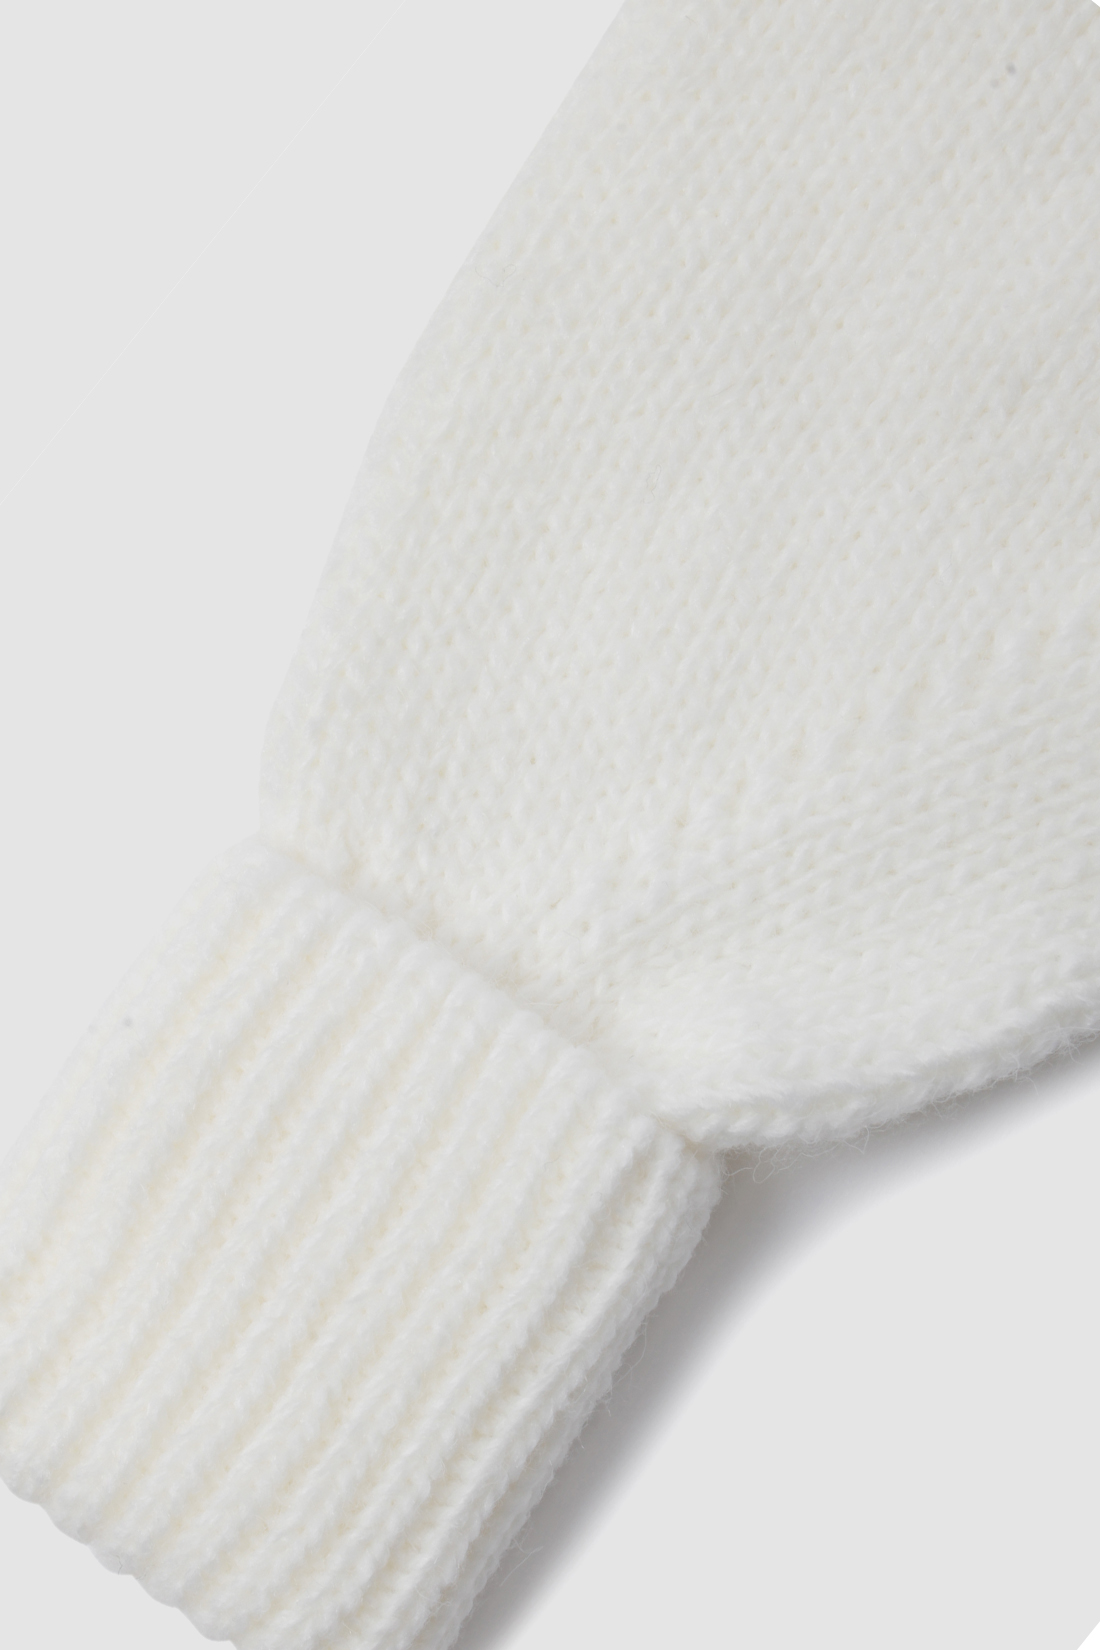 Комплект (шапка+шарф или шапка+1) (арт. baon B341537), размер Б/р 56, цвет белый Комплект (шапка+шарф или шапка+1) (арт. baon B341537) - фото 3